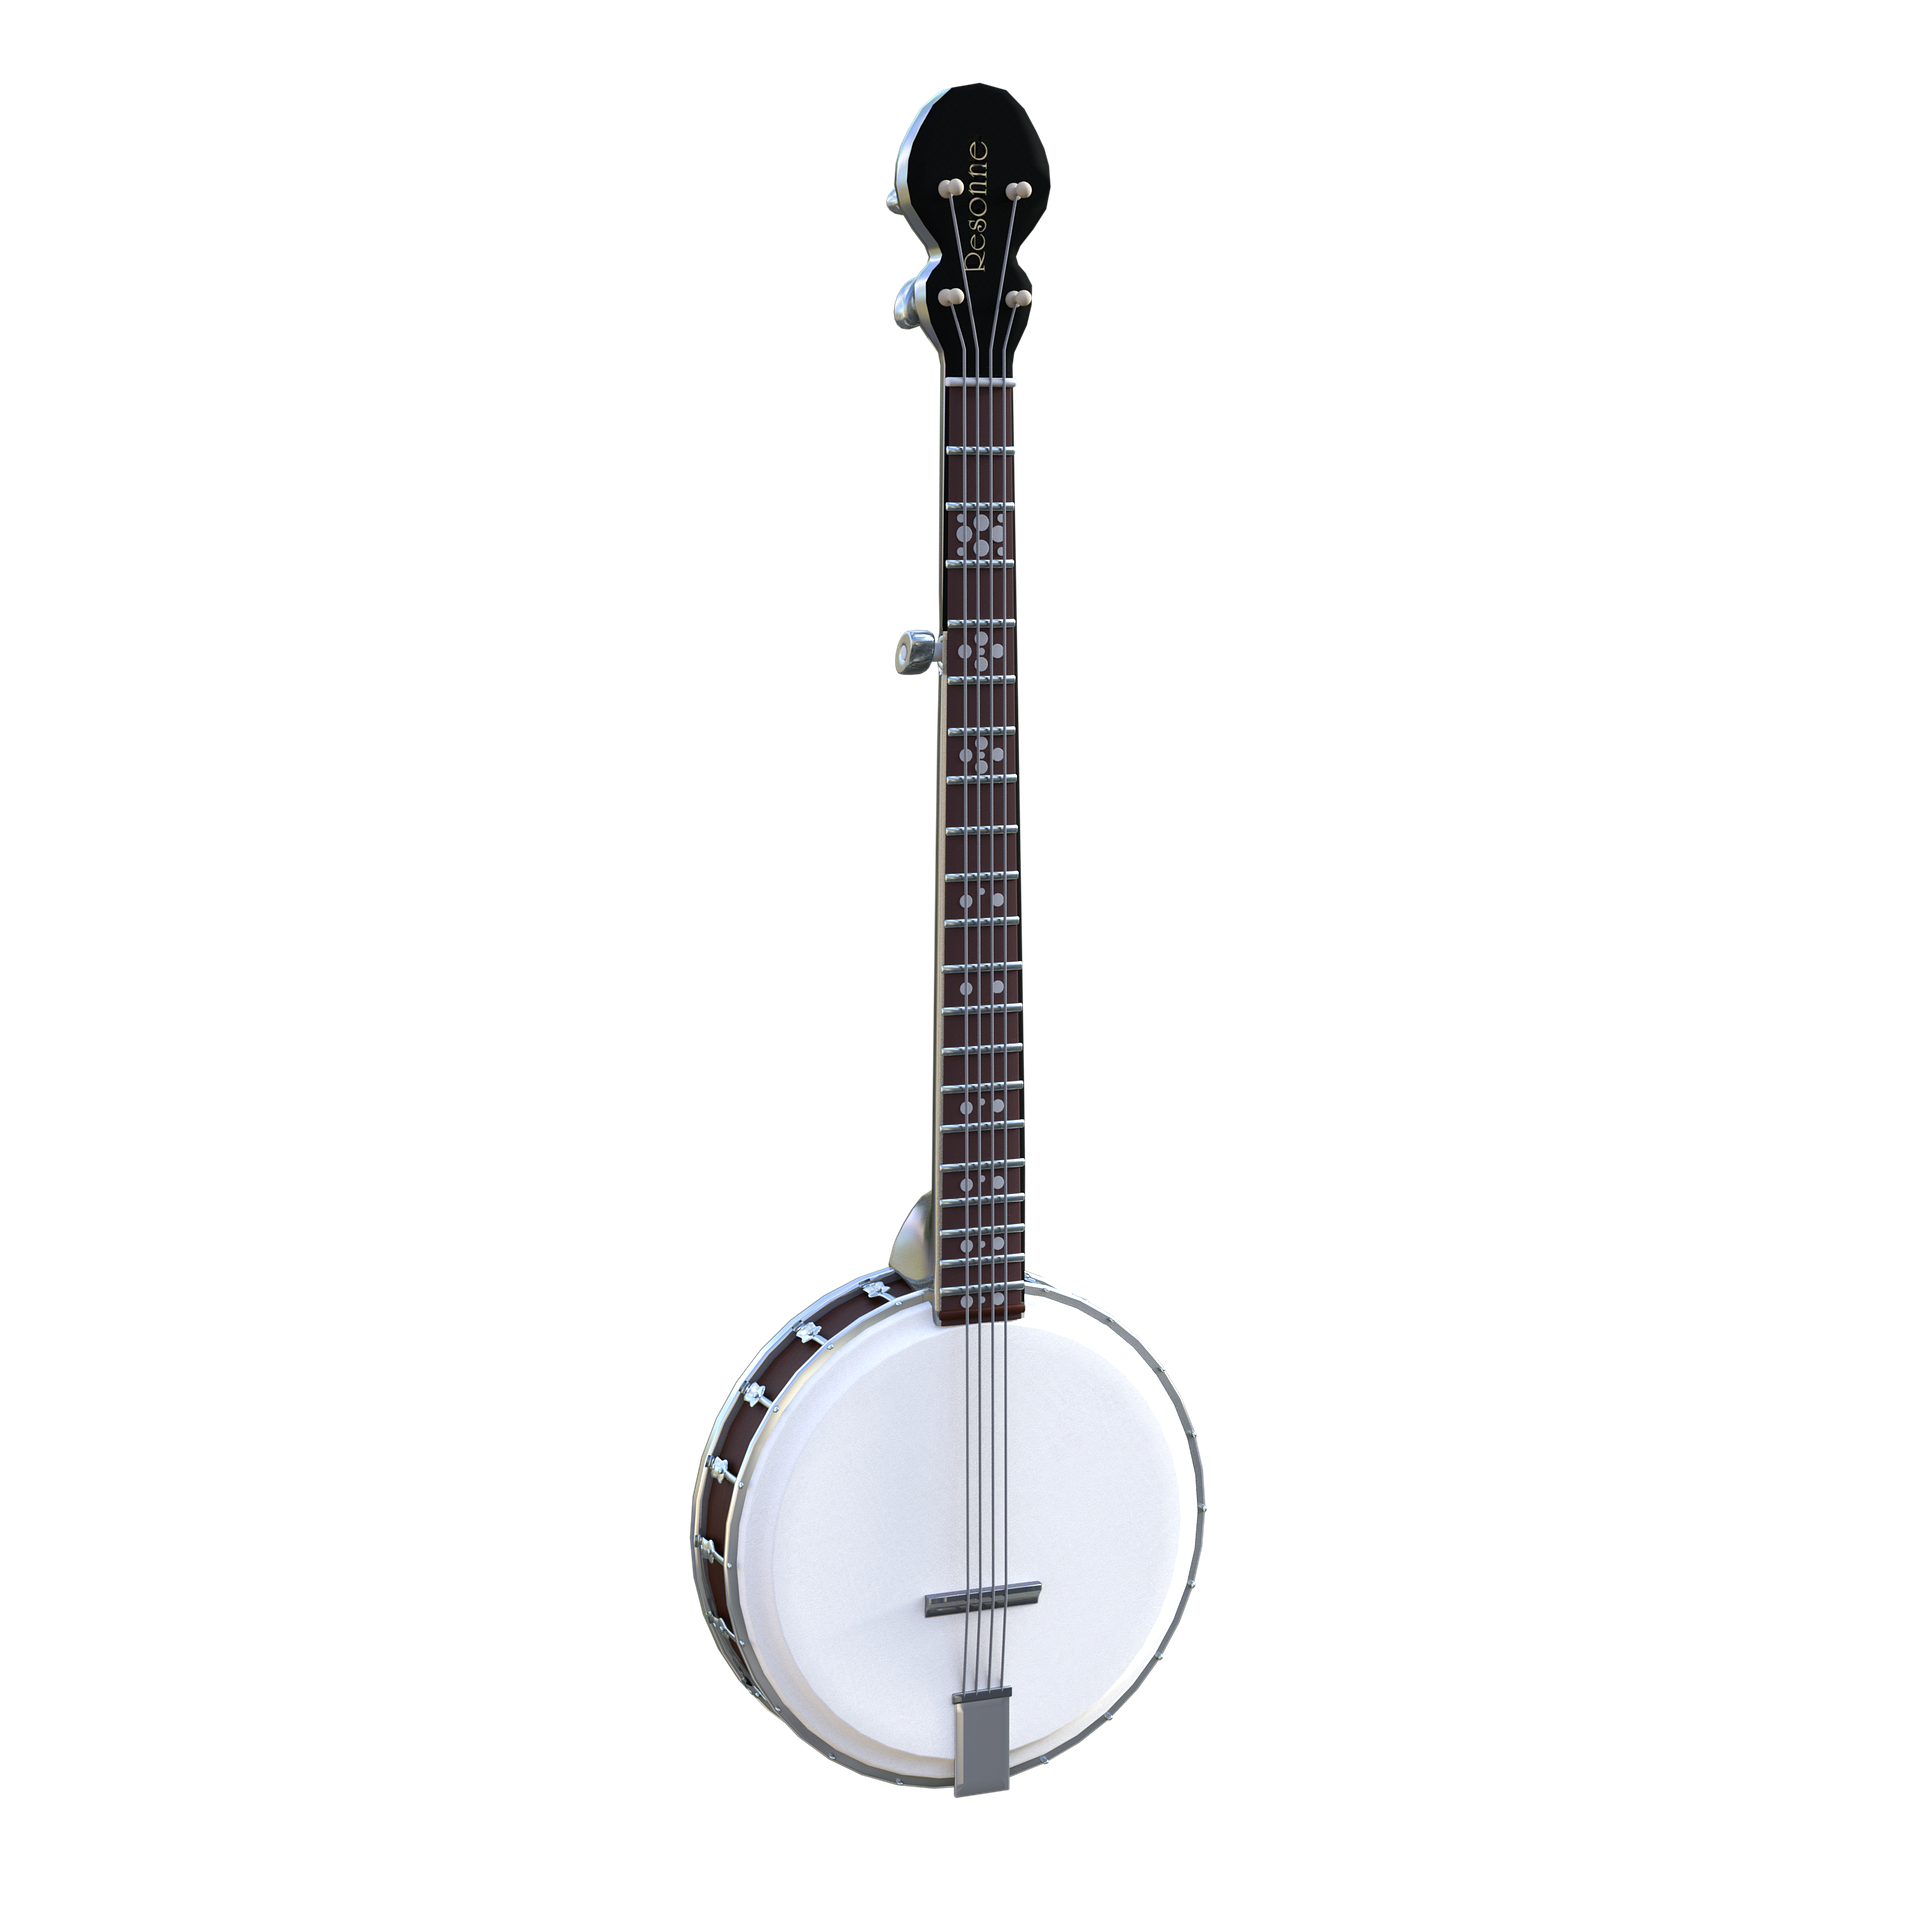 muzyka quiz muzyczny test wiedzy sprawdzian instrumenty muzyczne piosenki nuty wykonawcy artyści teksty wiedza ogólna pianino gitara perkusja banjo